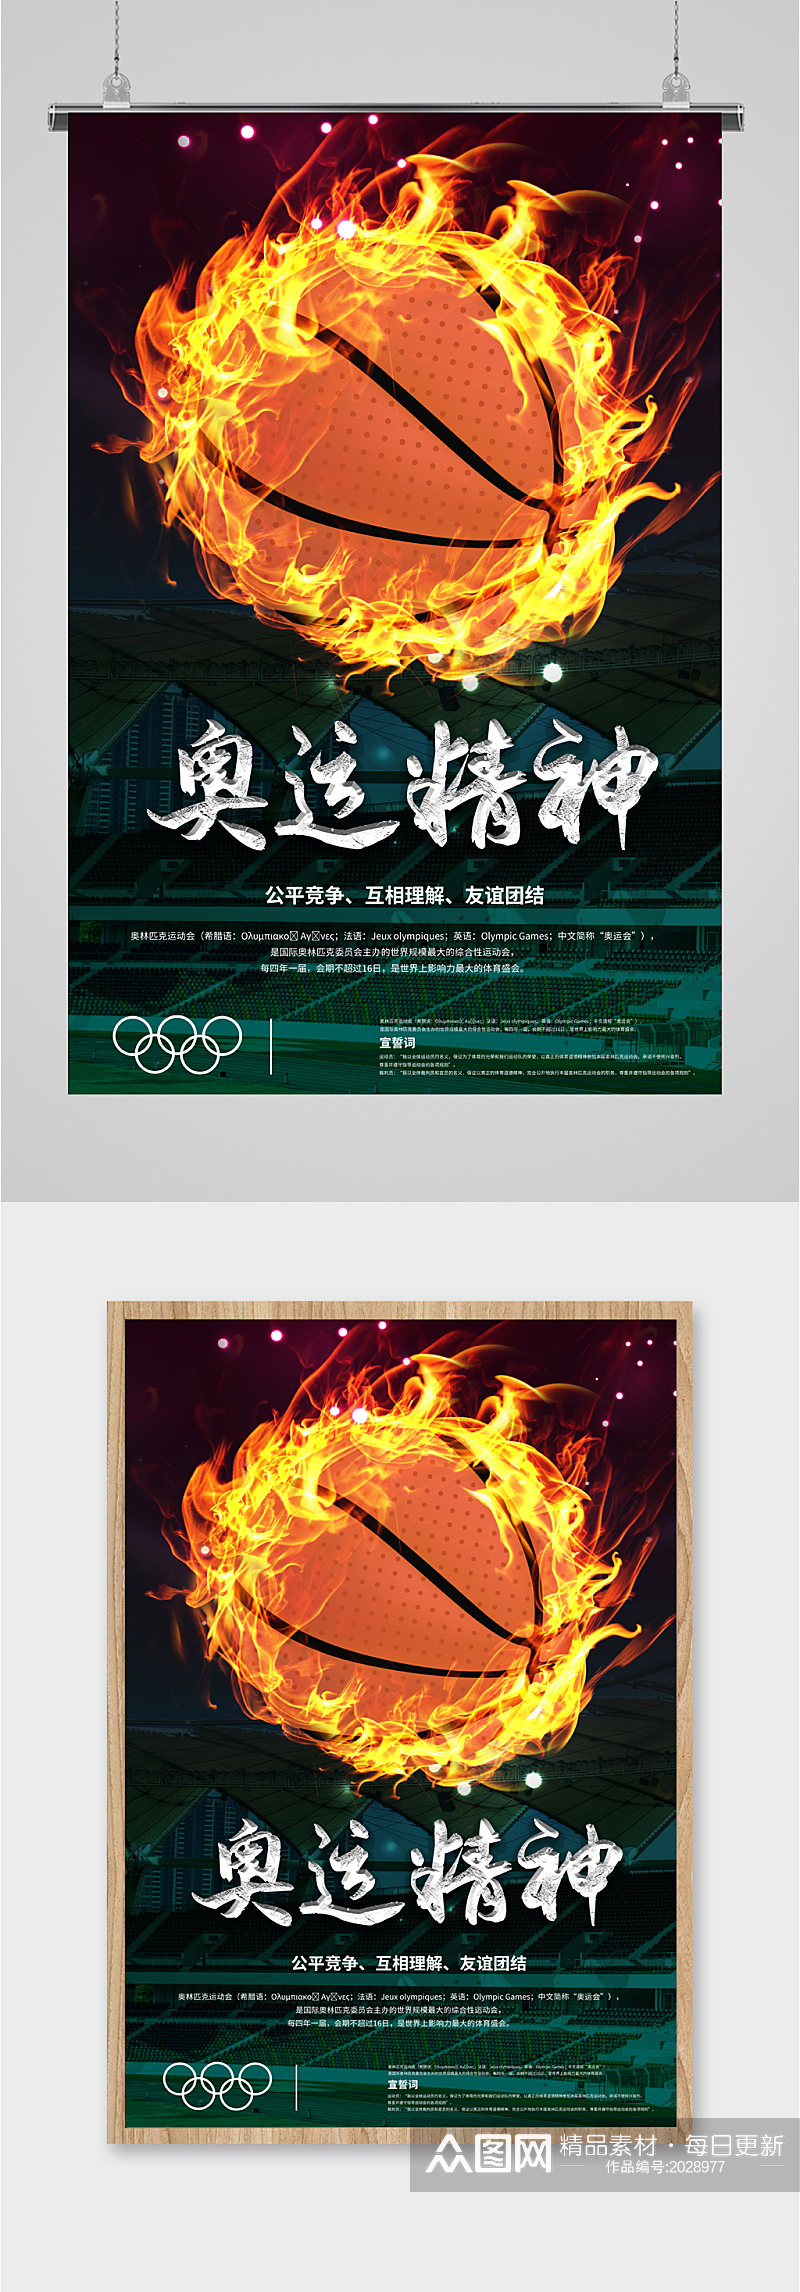 奥运精神宣传海报素材